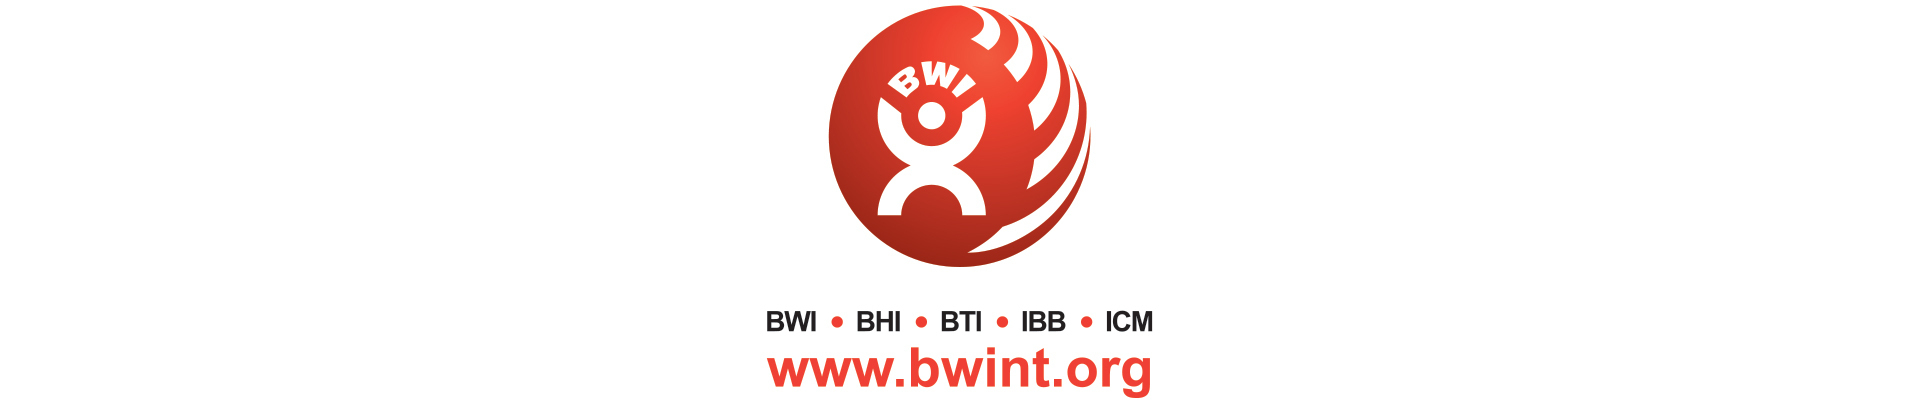 BWI World Board Meeting